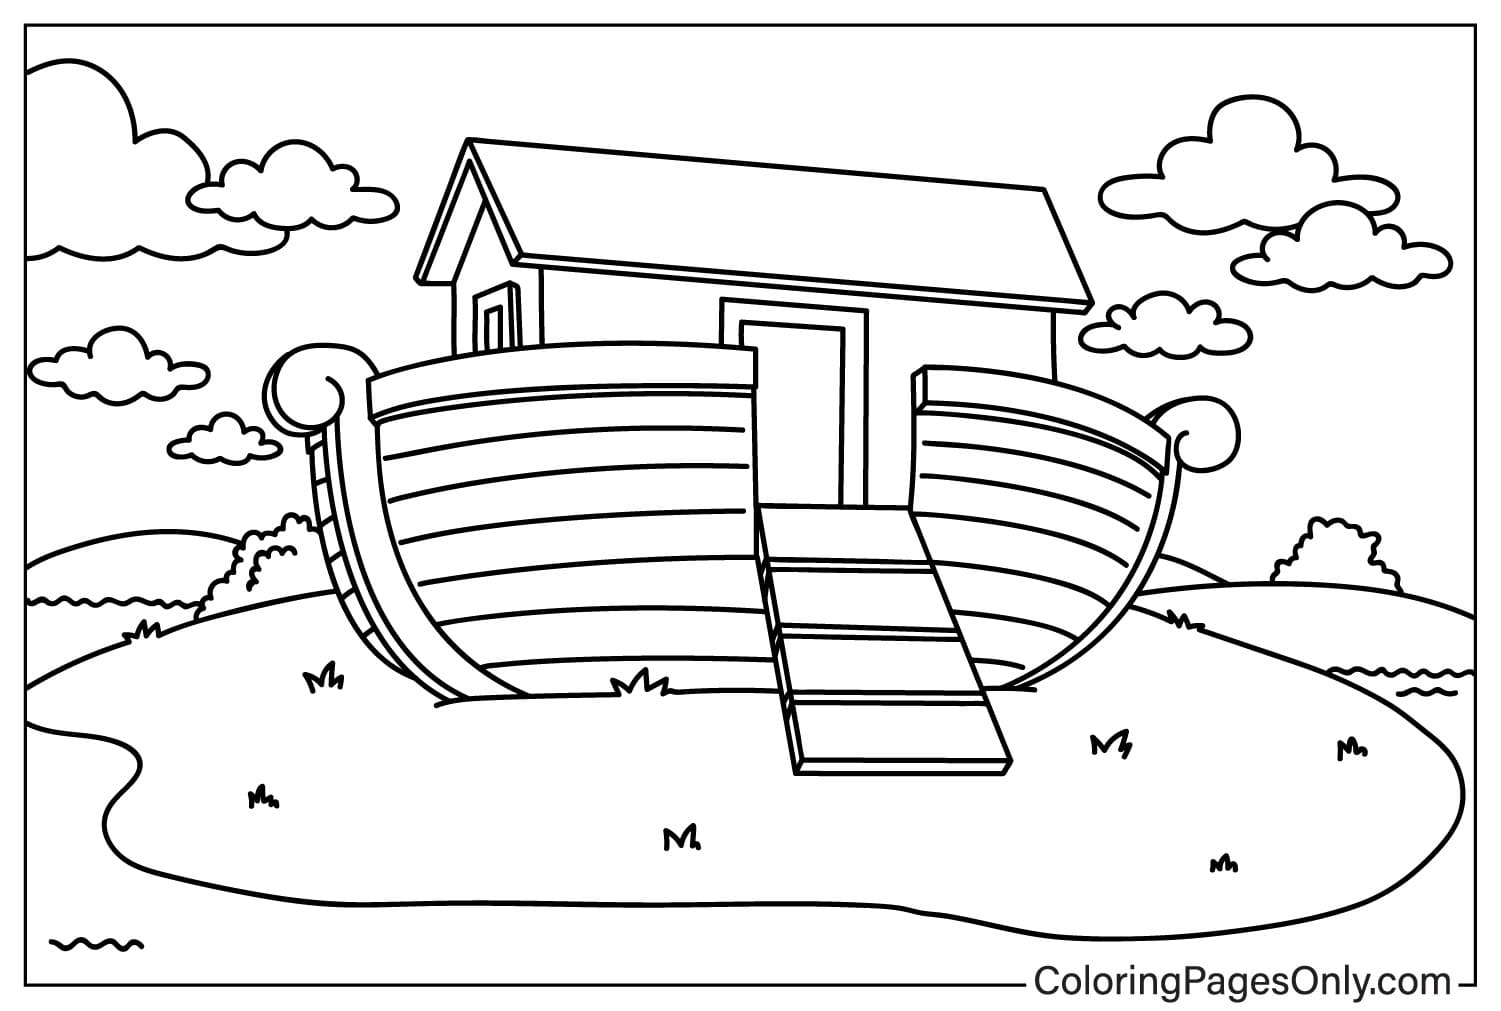 De Ark van Noach kleurplaat voor kinderen van de Ark van Noach